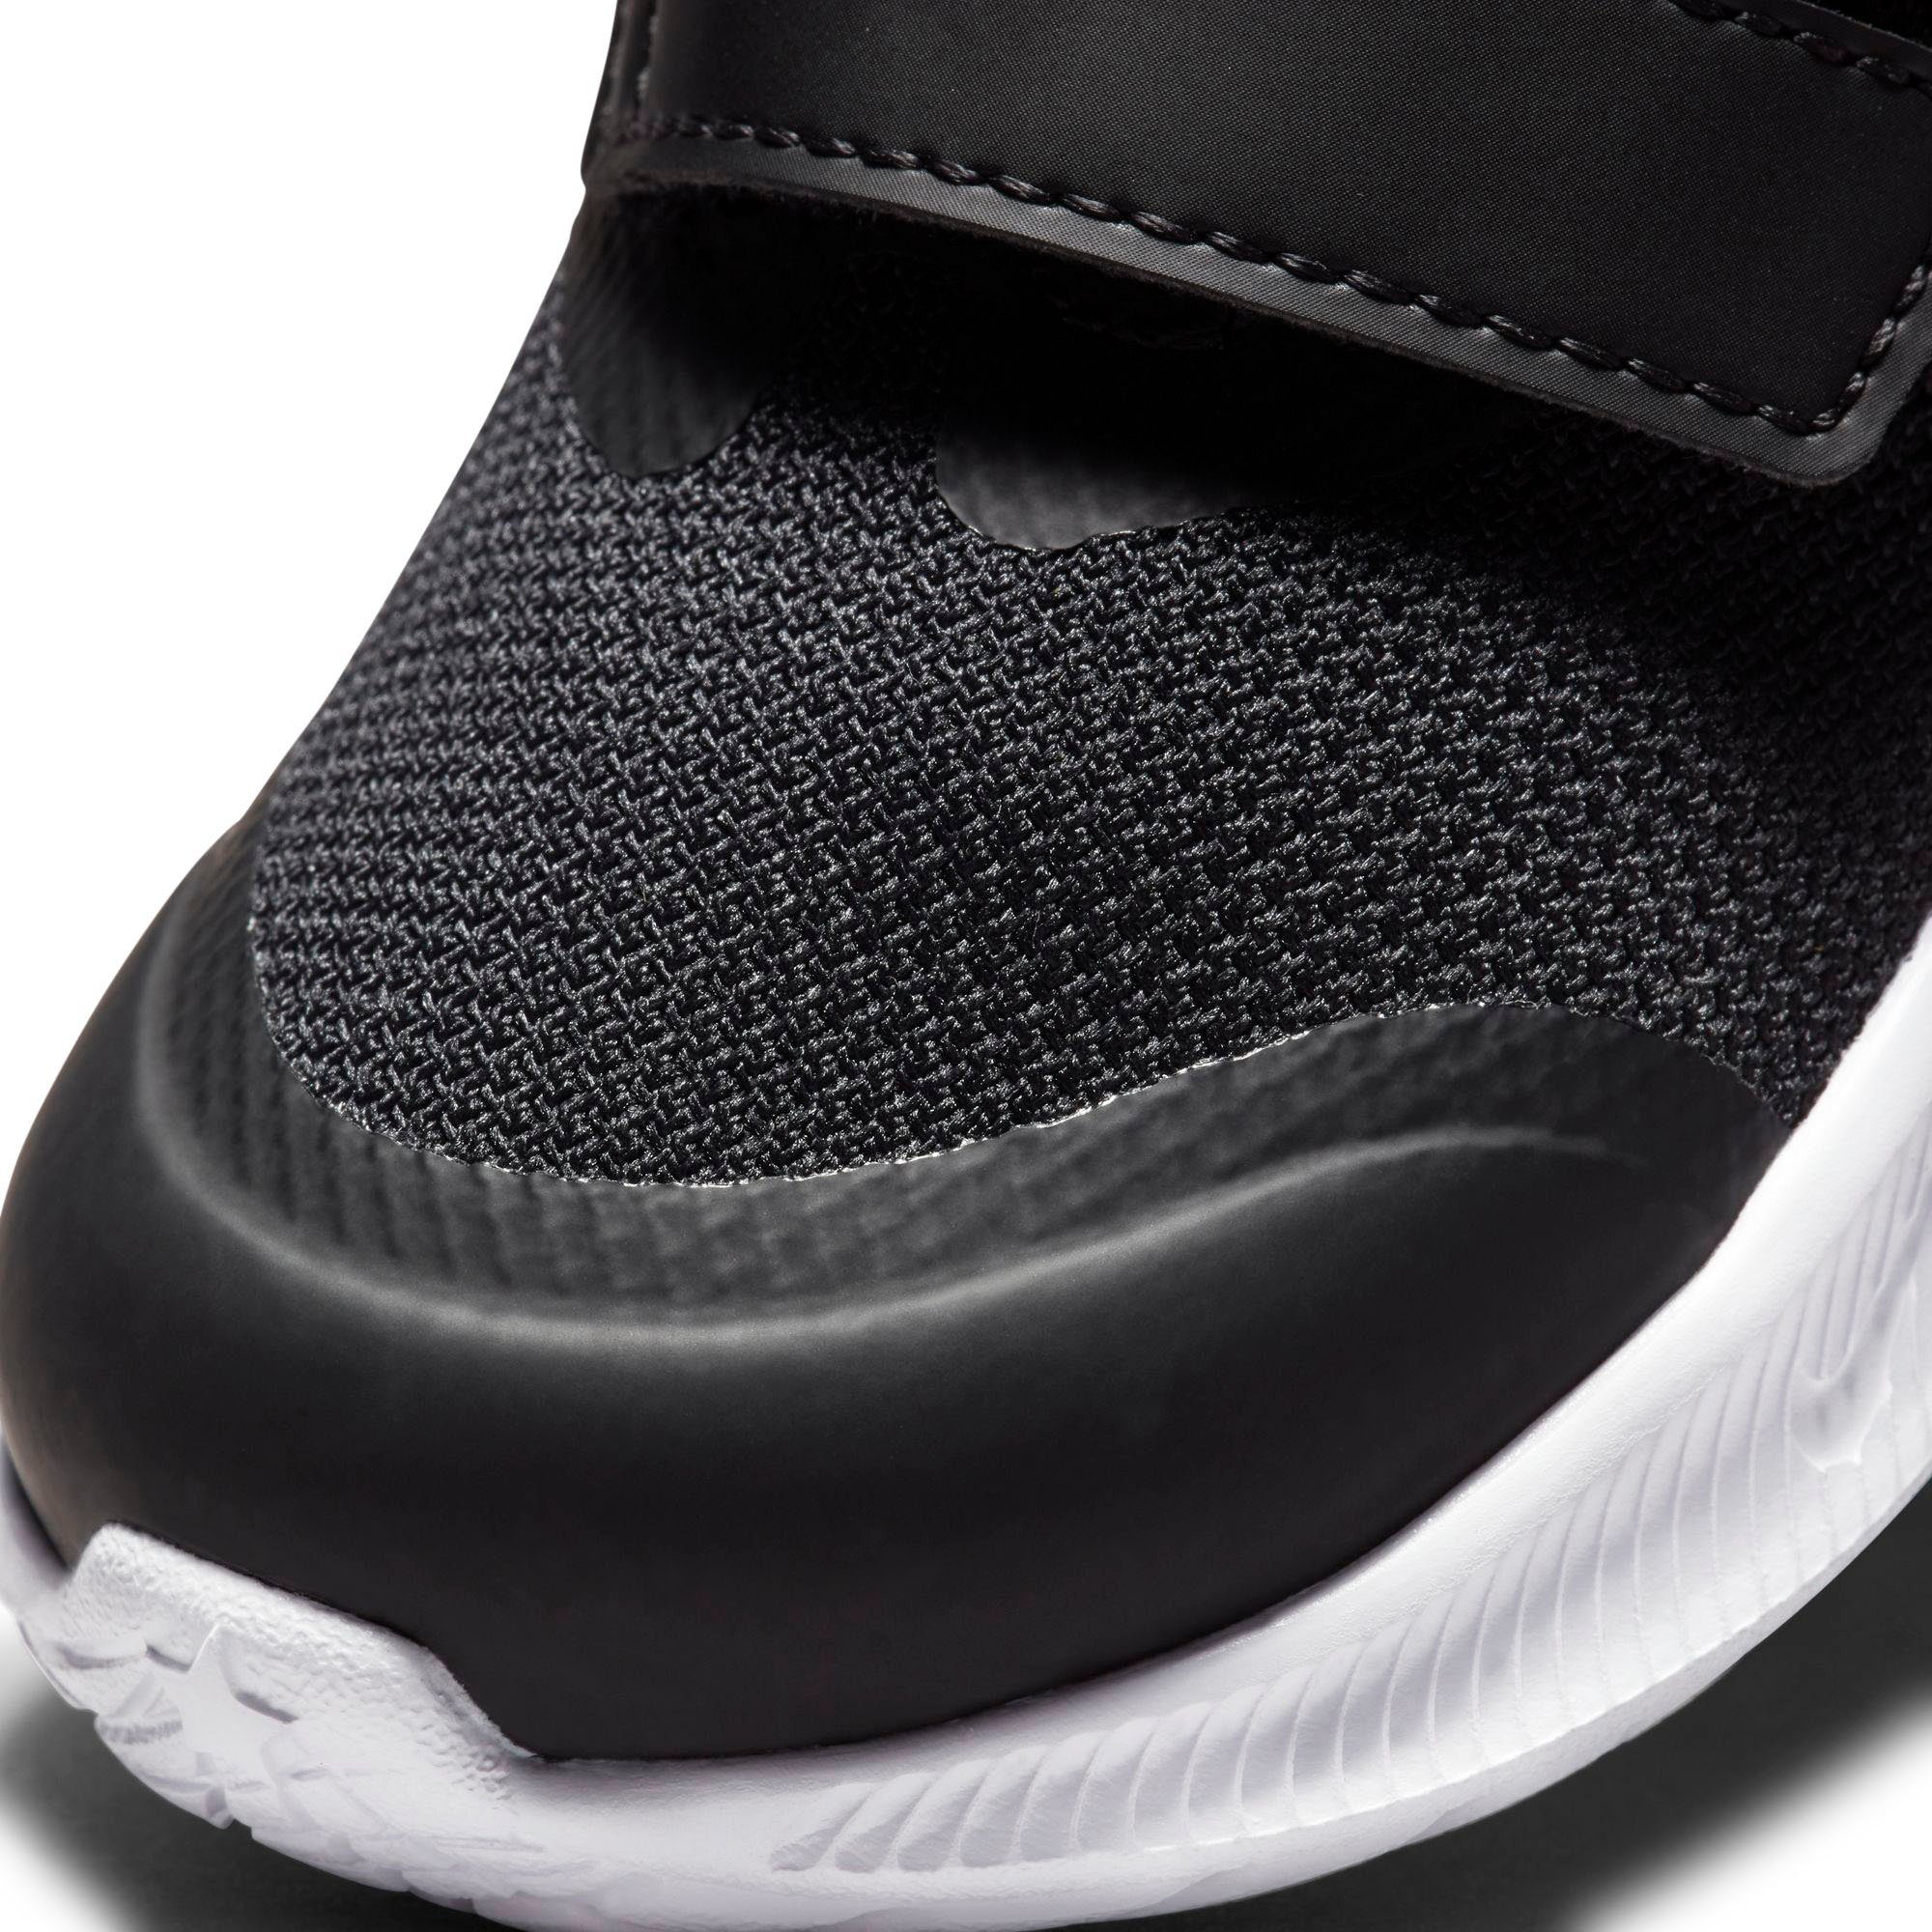 STAR 3 Klettverschluss mit RUNNER schwarz-grau Laufschuh (TD) Nike